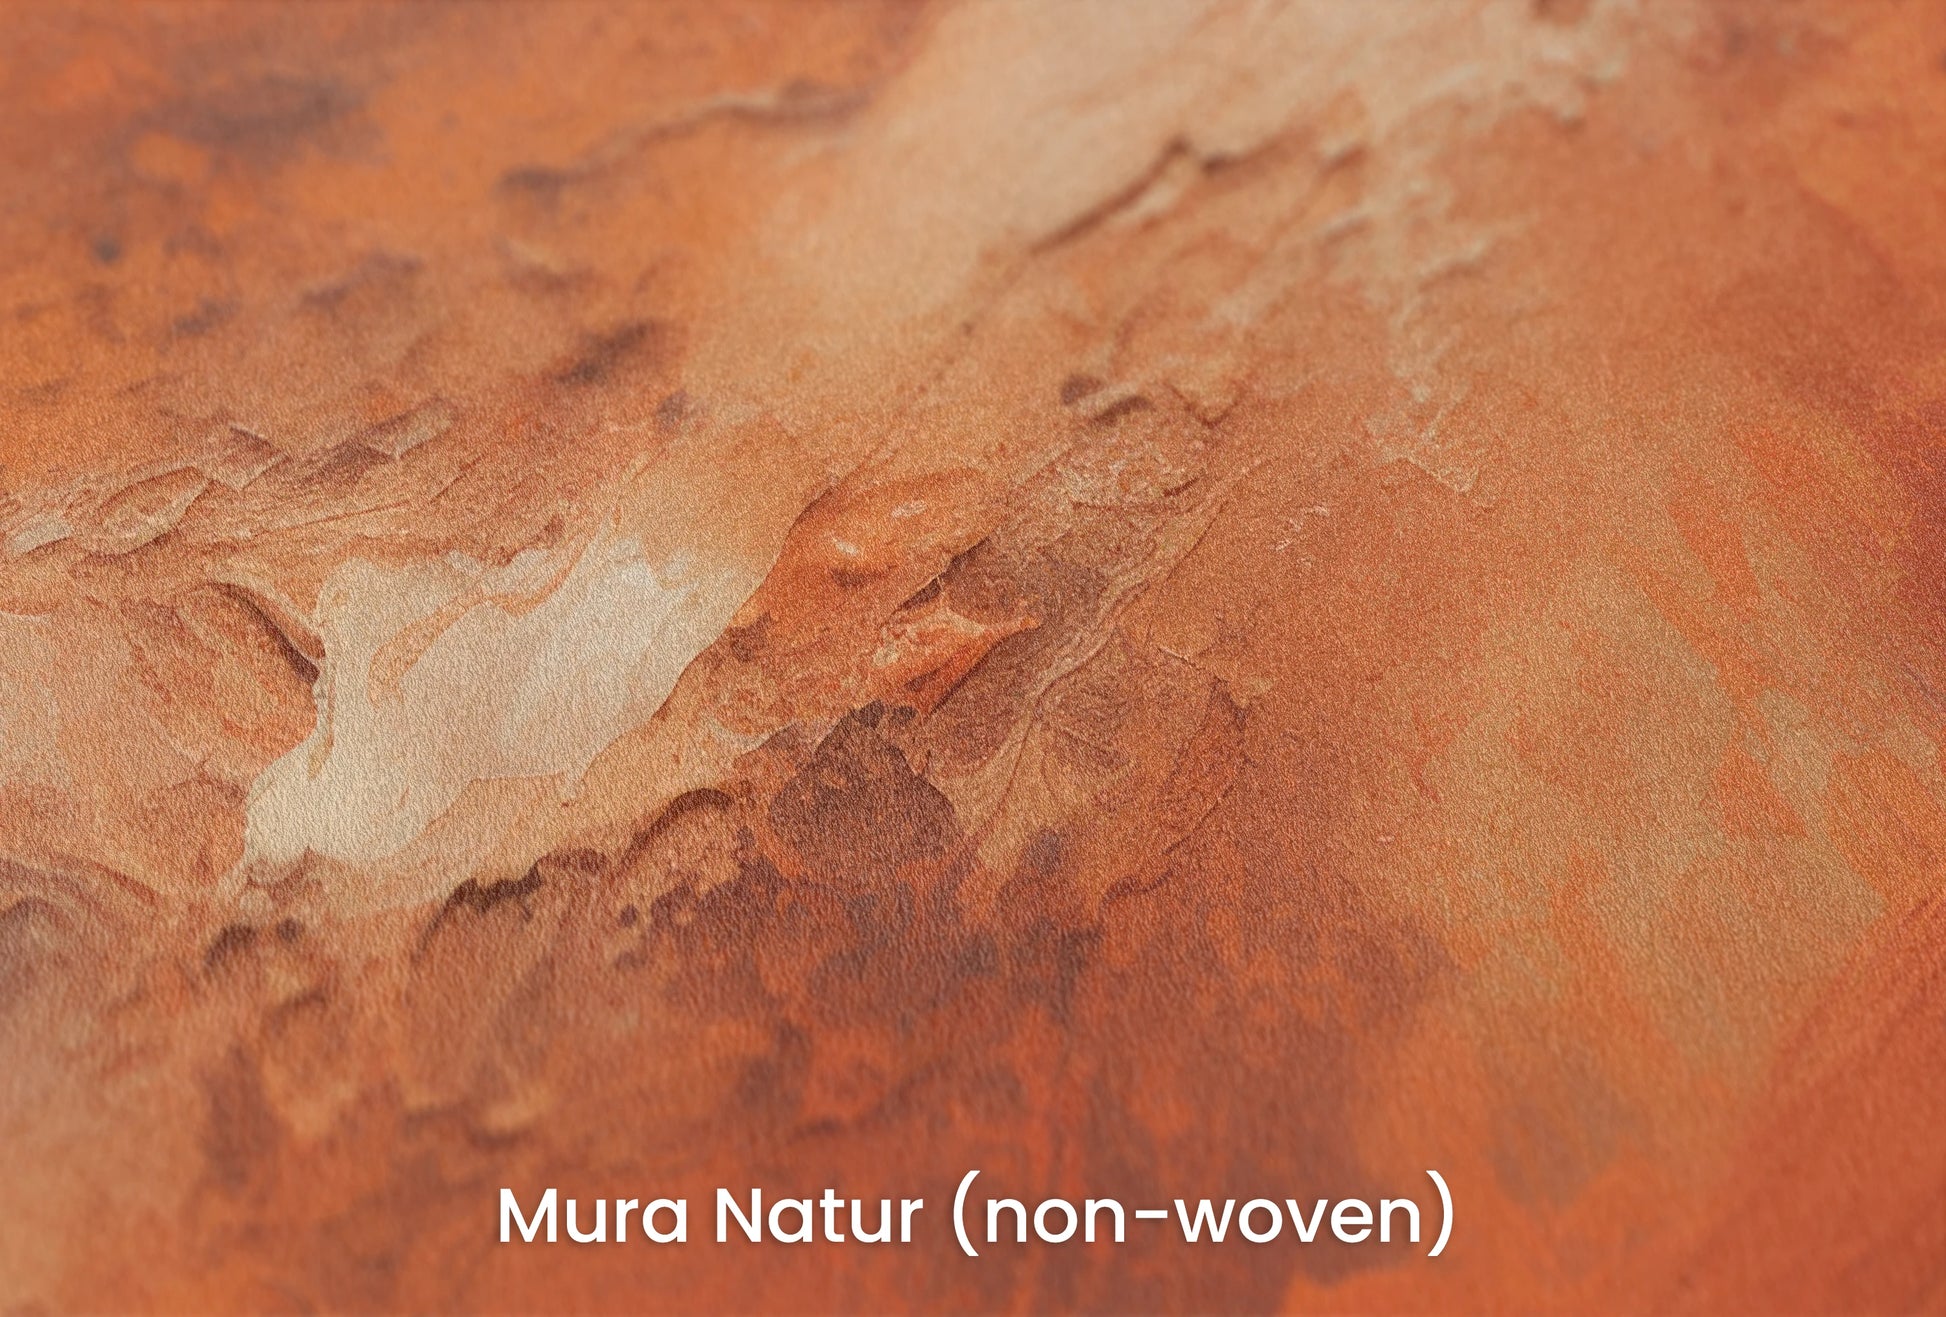 Zbliżenie na artystyczną fototapetę o nazwie Mars' Warmth na podłożu Mura Natur (non-woven) - naturalne i ekologiczne podłoże.